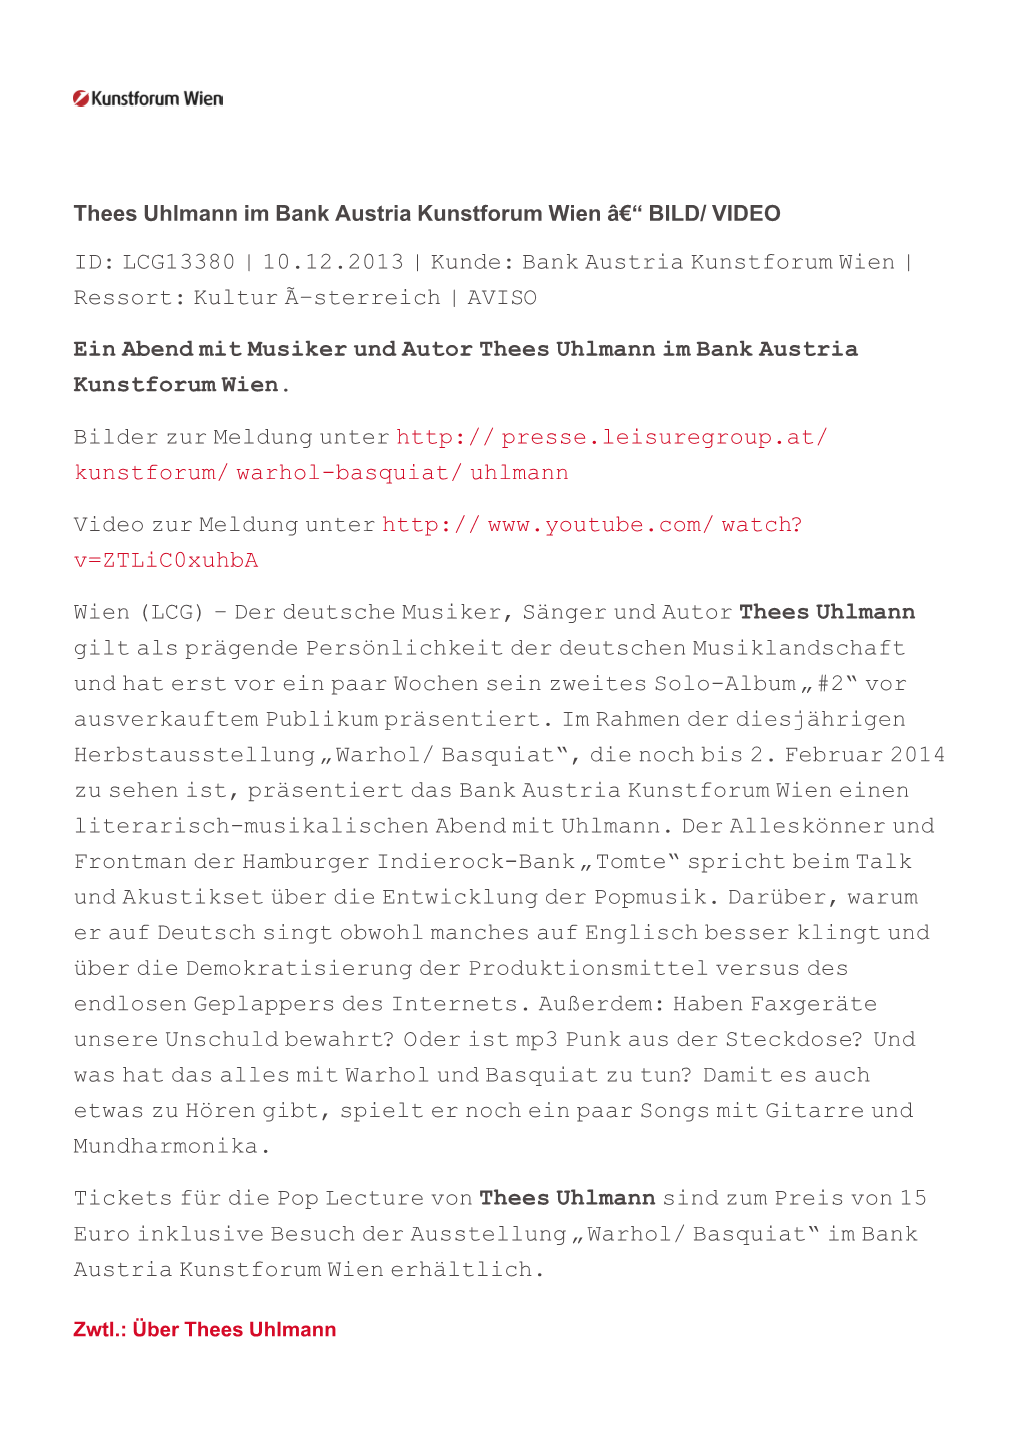 ID: LCG13380 | 10.12.2013 | Kunde: Bank Austria Kunstforum Wien | Ressort: Kultur Ã–Sterreich | AVISO